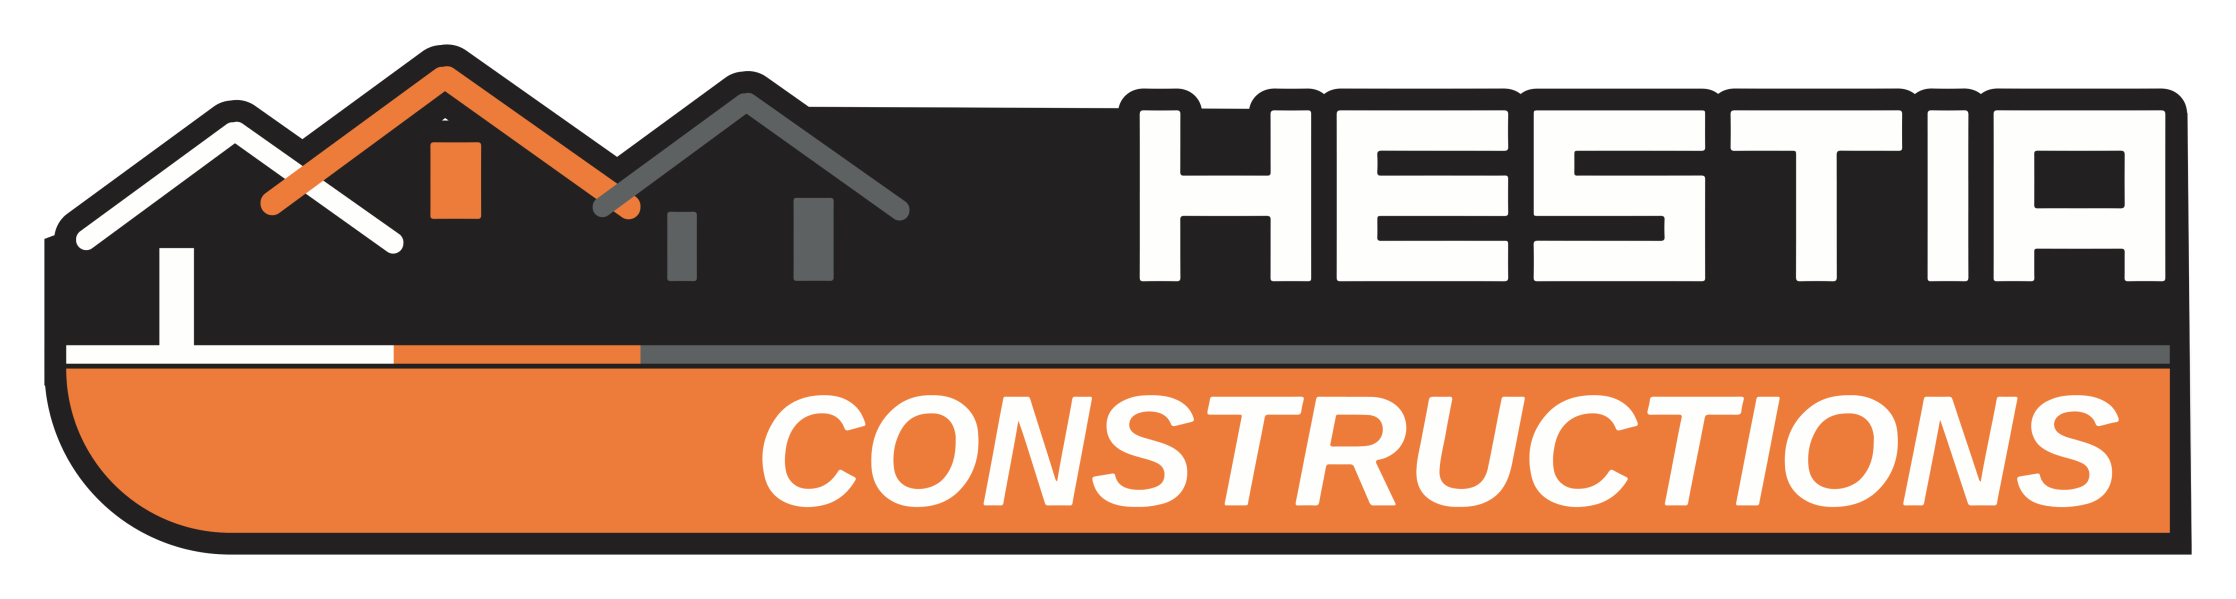 HESTIA CONSTRUCTION - Votre partenaire local dans la construction et la rénovation de maisons et batiments